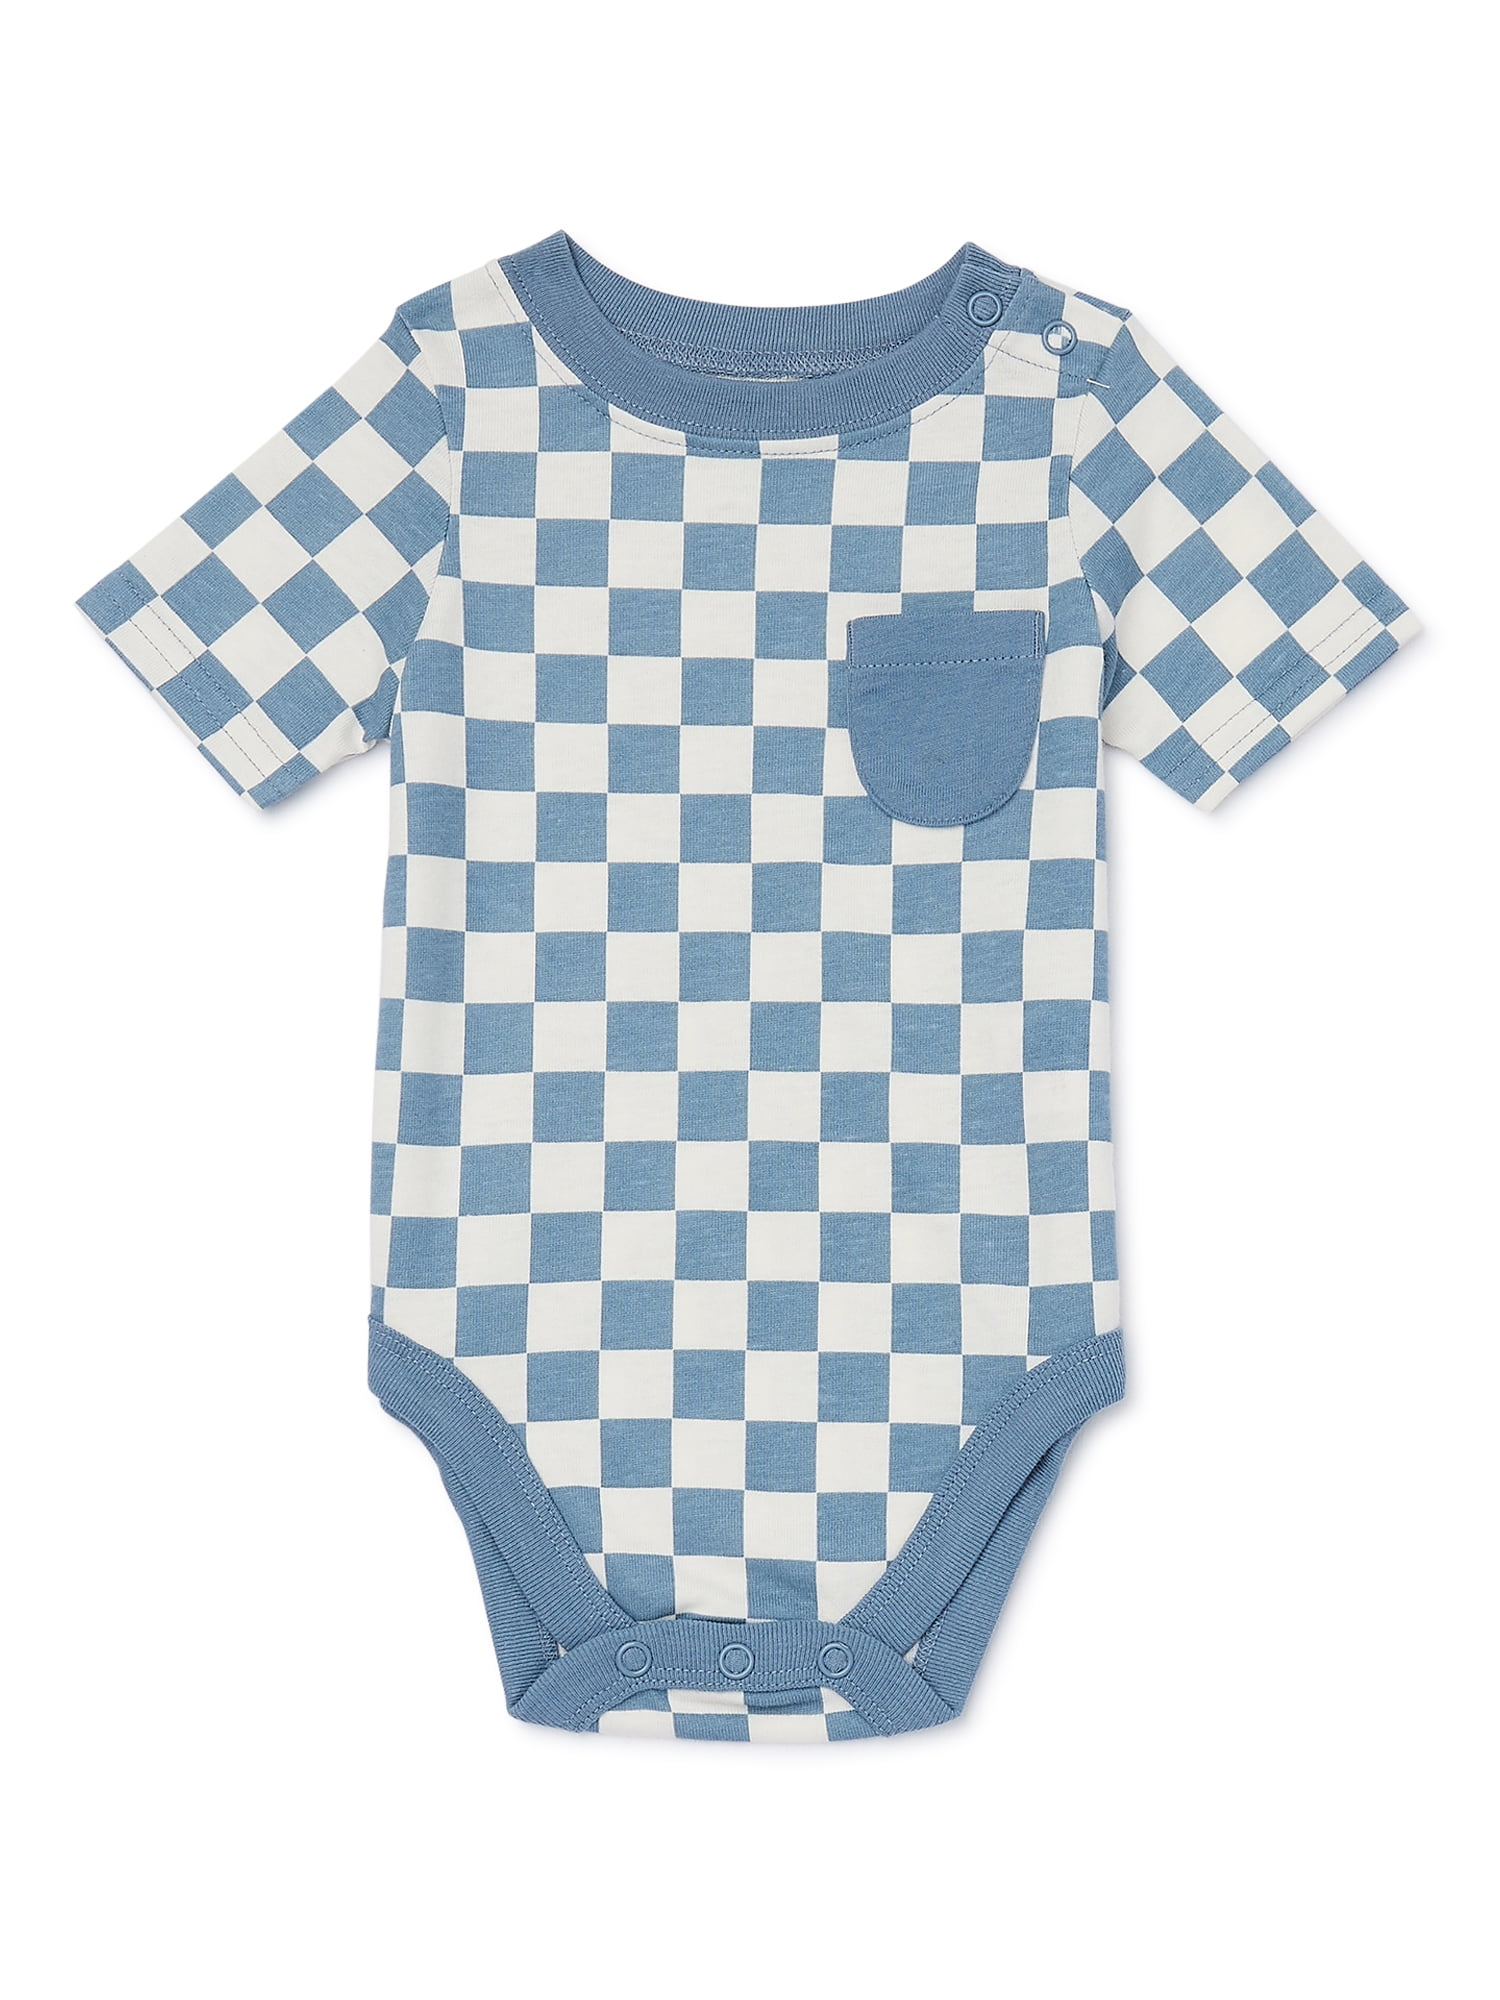 Garanimals Baby Boy Short Sleeve Print Bodysuit, Sizes 0-24 Months